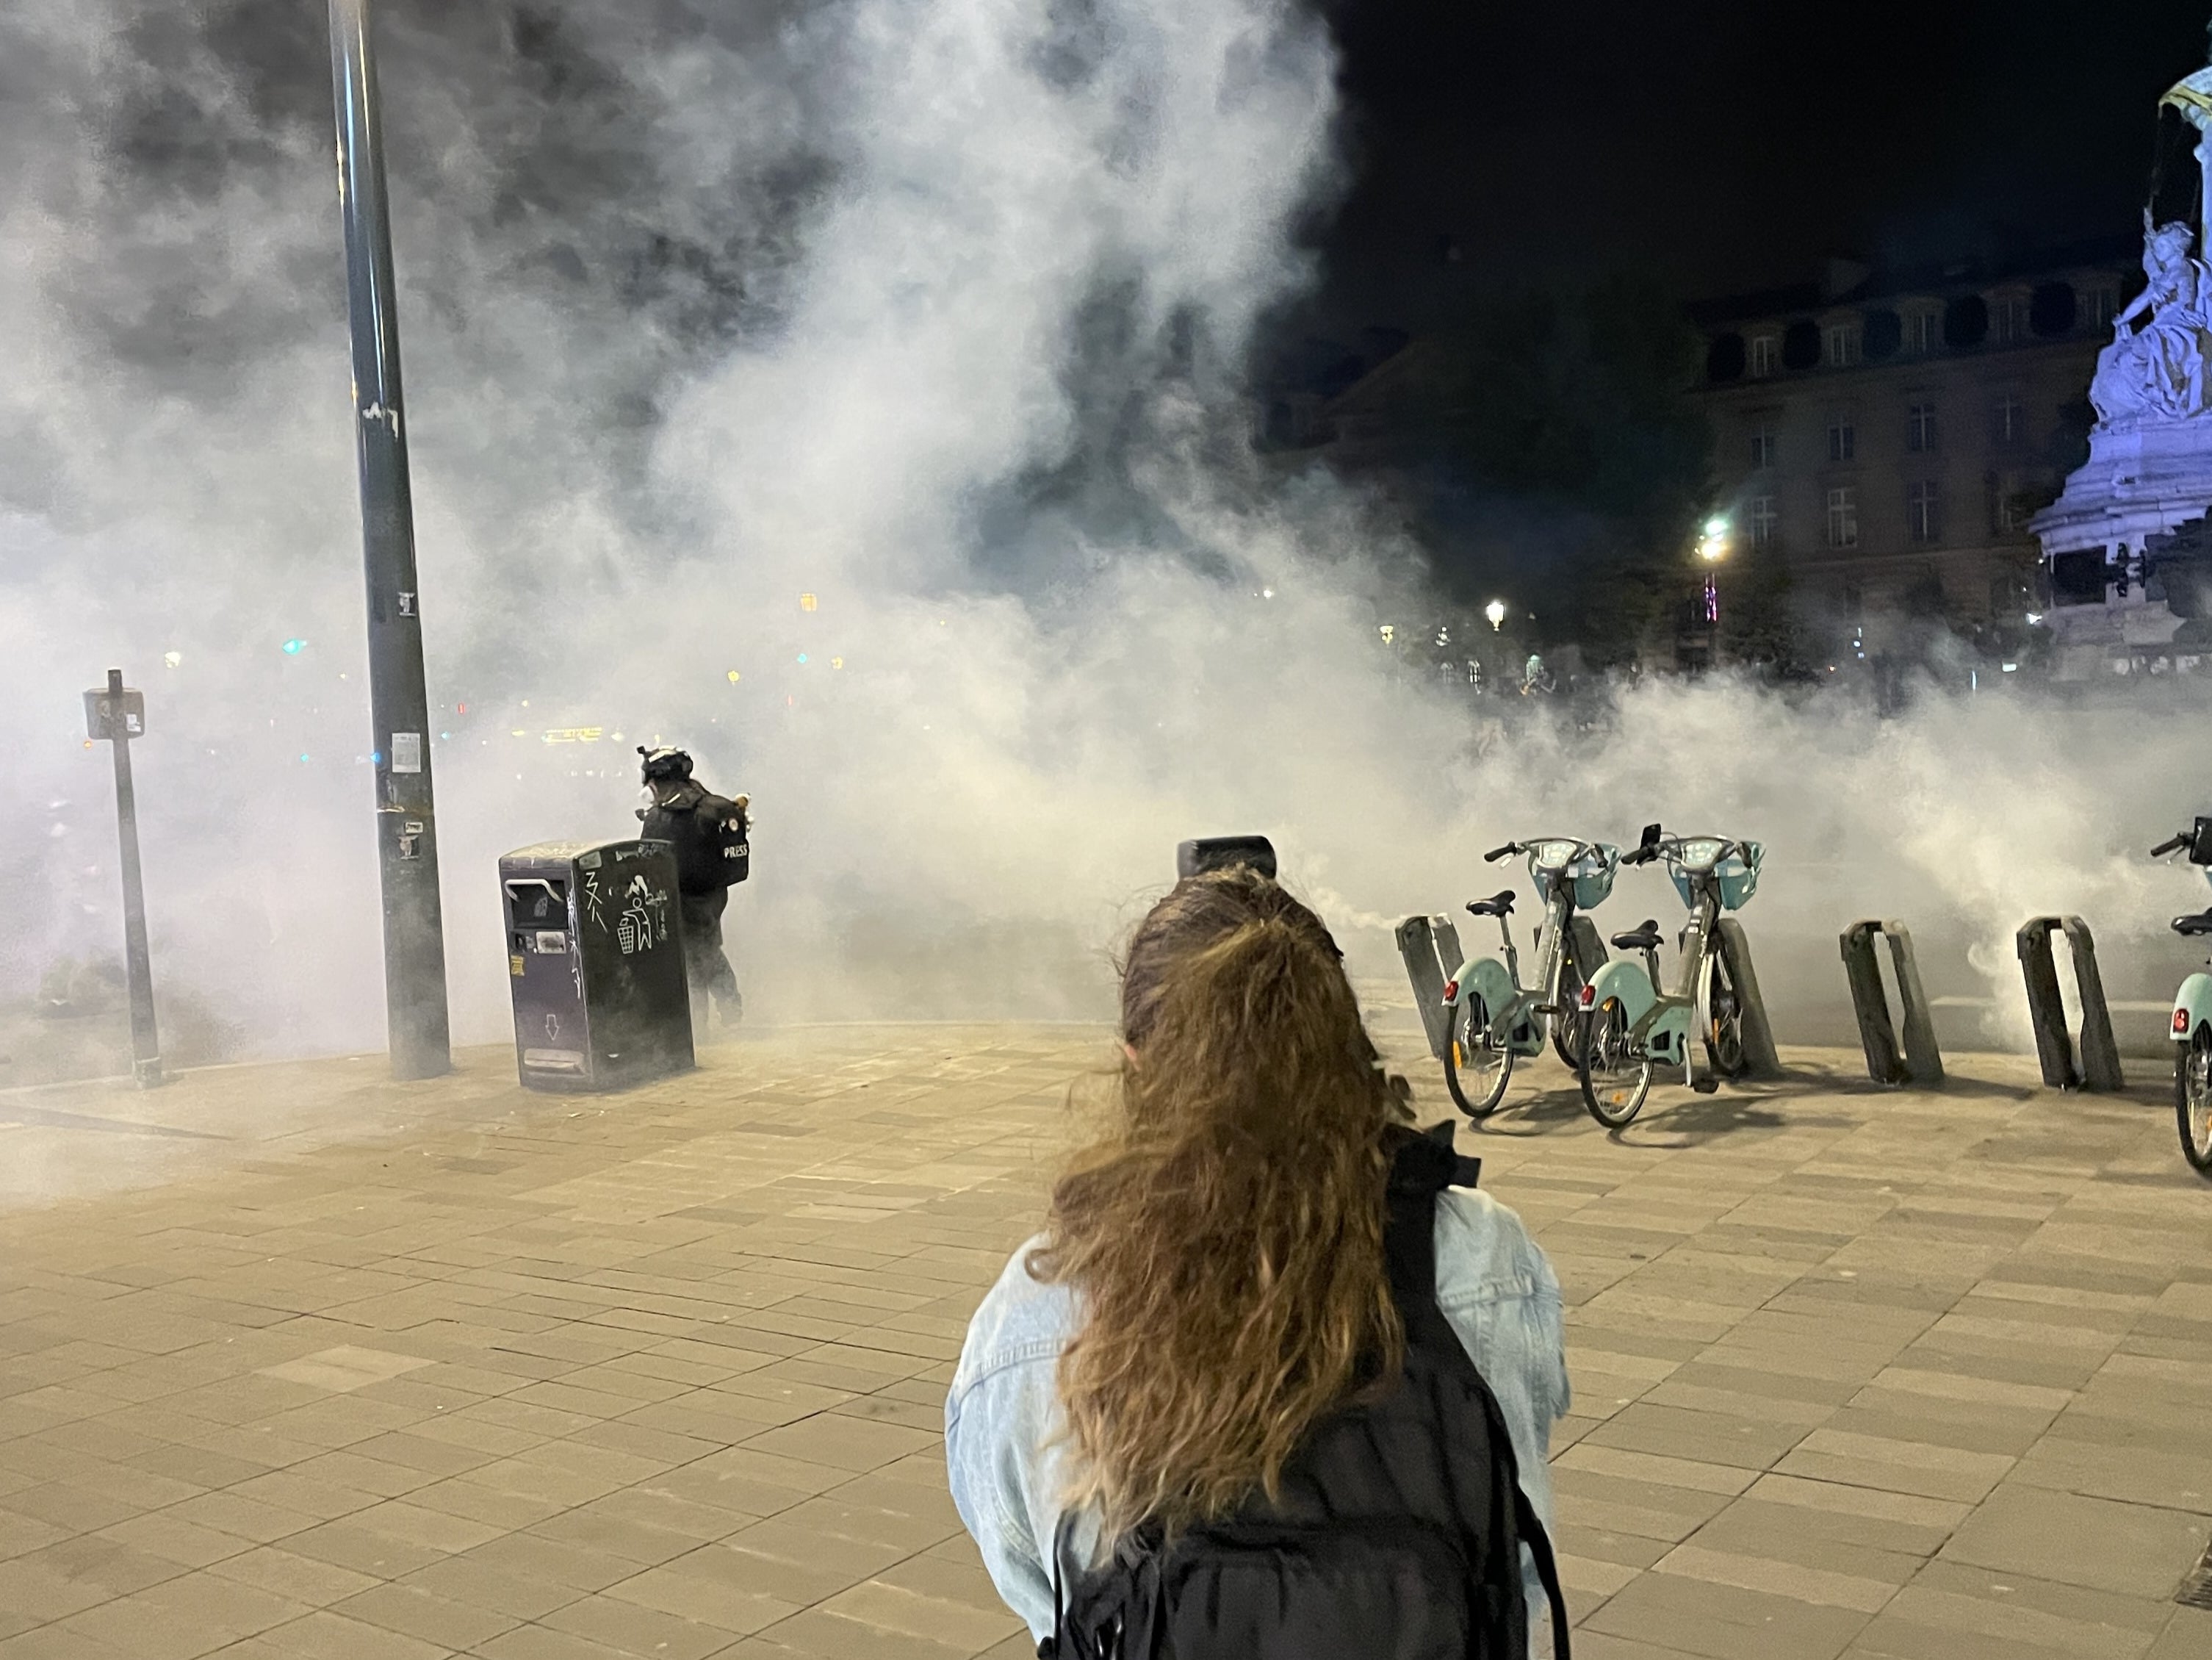 Teargas is used by police to break up crowds of protestors at Place de la République in Paris